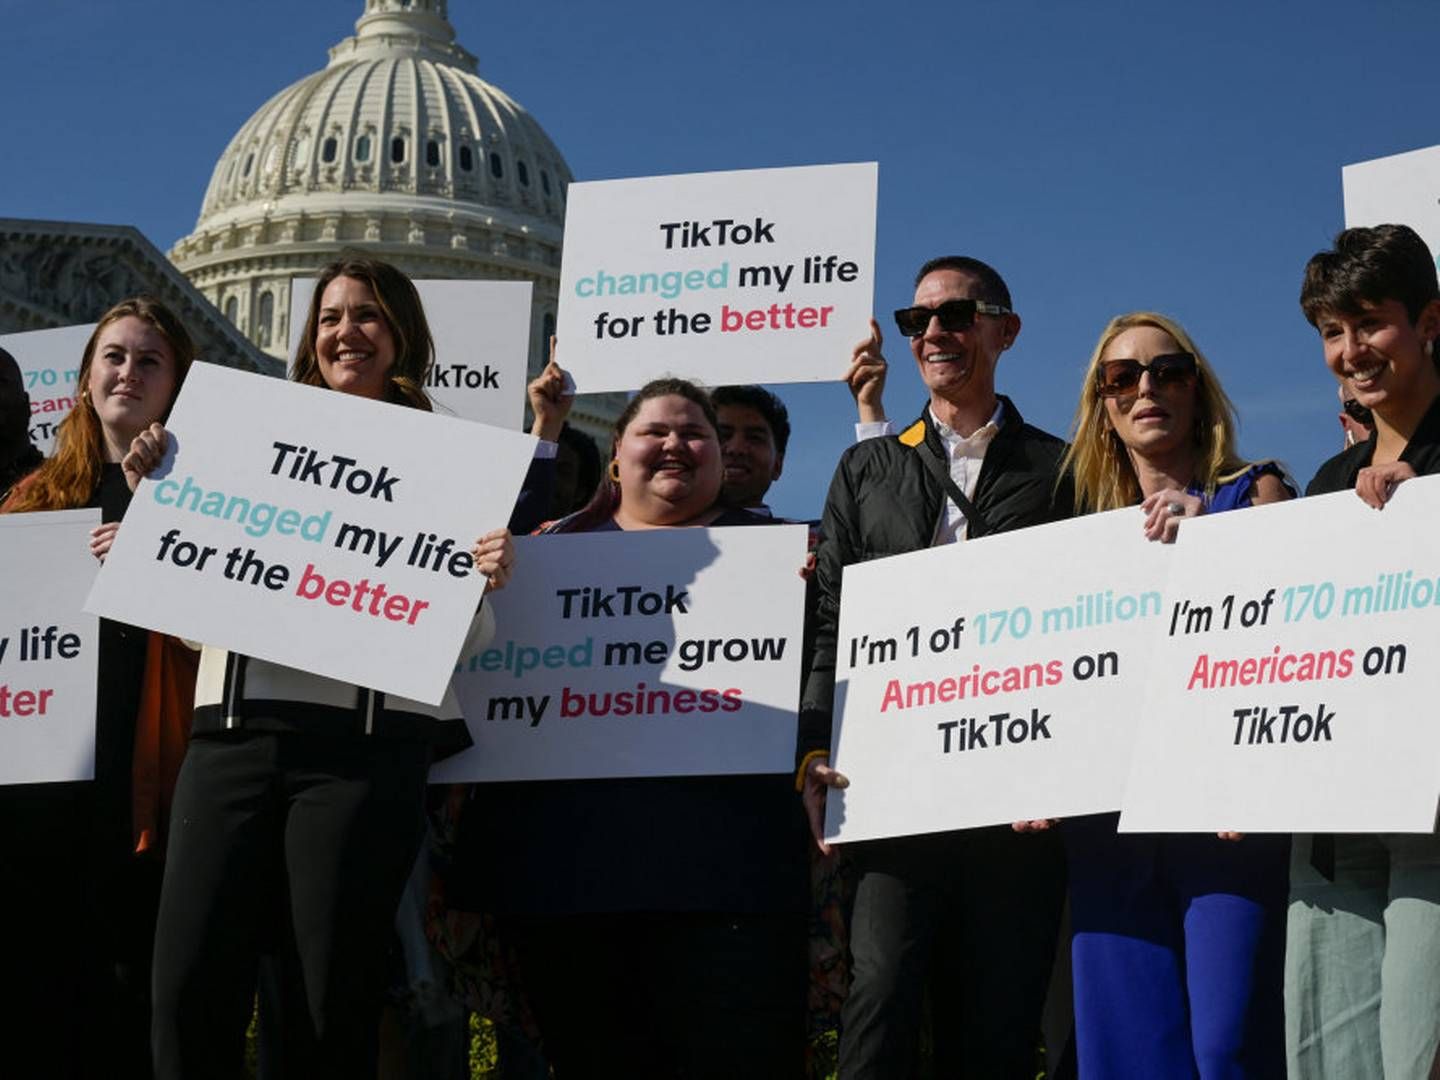 Tiktok-brugere demonstrerede tirsdag mod et forbud mod Tiktok foran Kongressen i Washington D.C. | Foto: Craig Hudson/Reuters